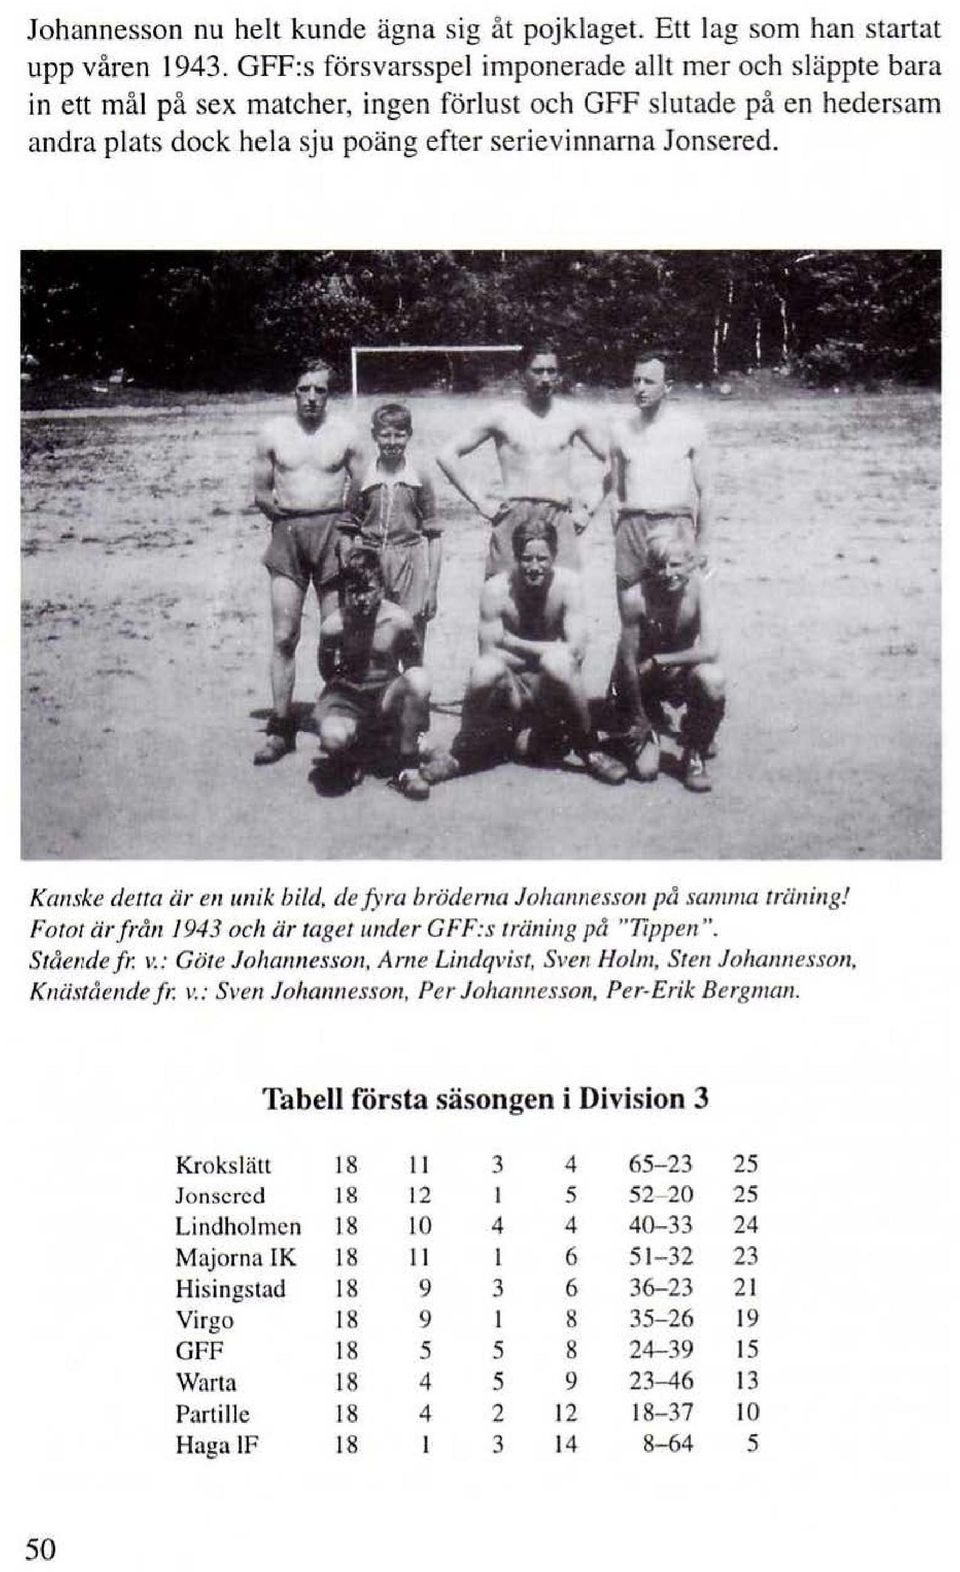 Kanske derra är en 1111ik bild, de fyra bröderna Johan11esson pusamma träning! Fotot ärfråll. 1943 och är taget tmder G F F: s träning på "Ttppen". Stående fr. v.